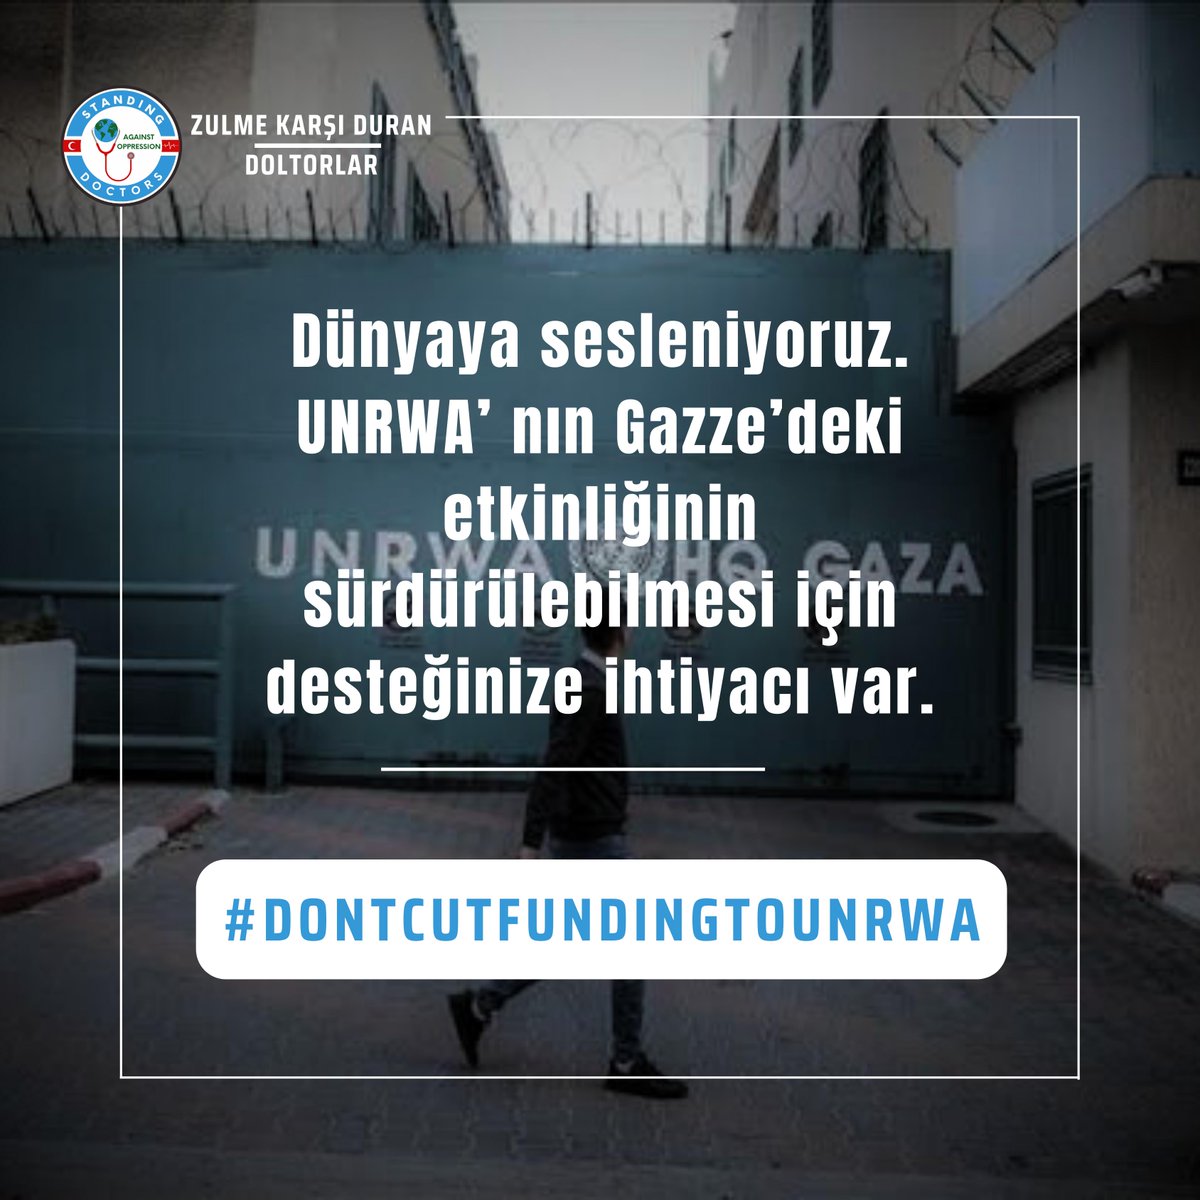 Hastag çalışmamız başladı desteklerinizi bekliyoruz. #DONTCUTFUNDINGTOUNRWA